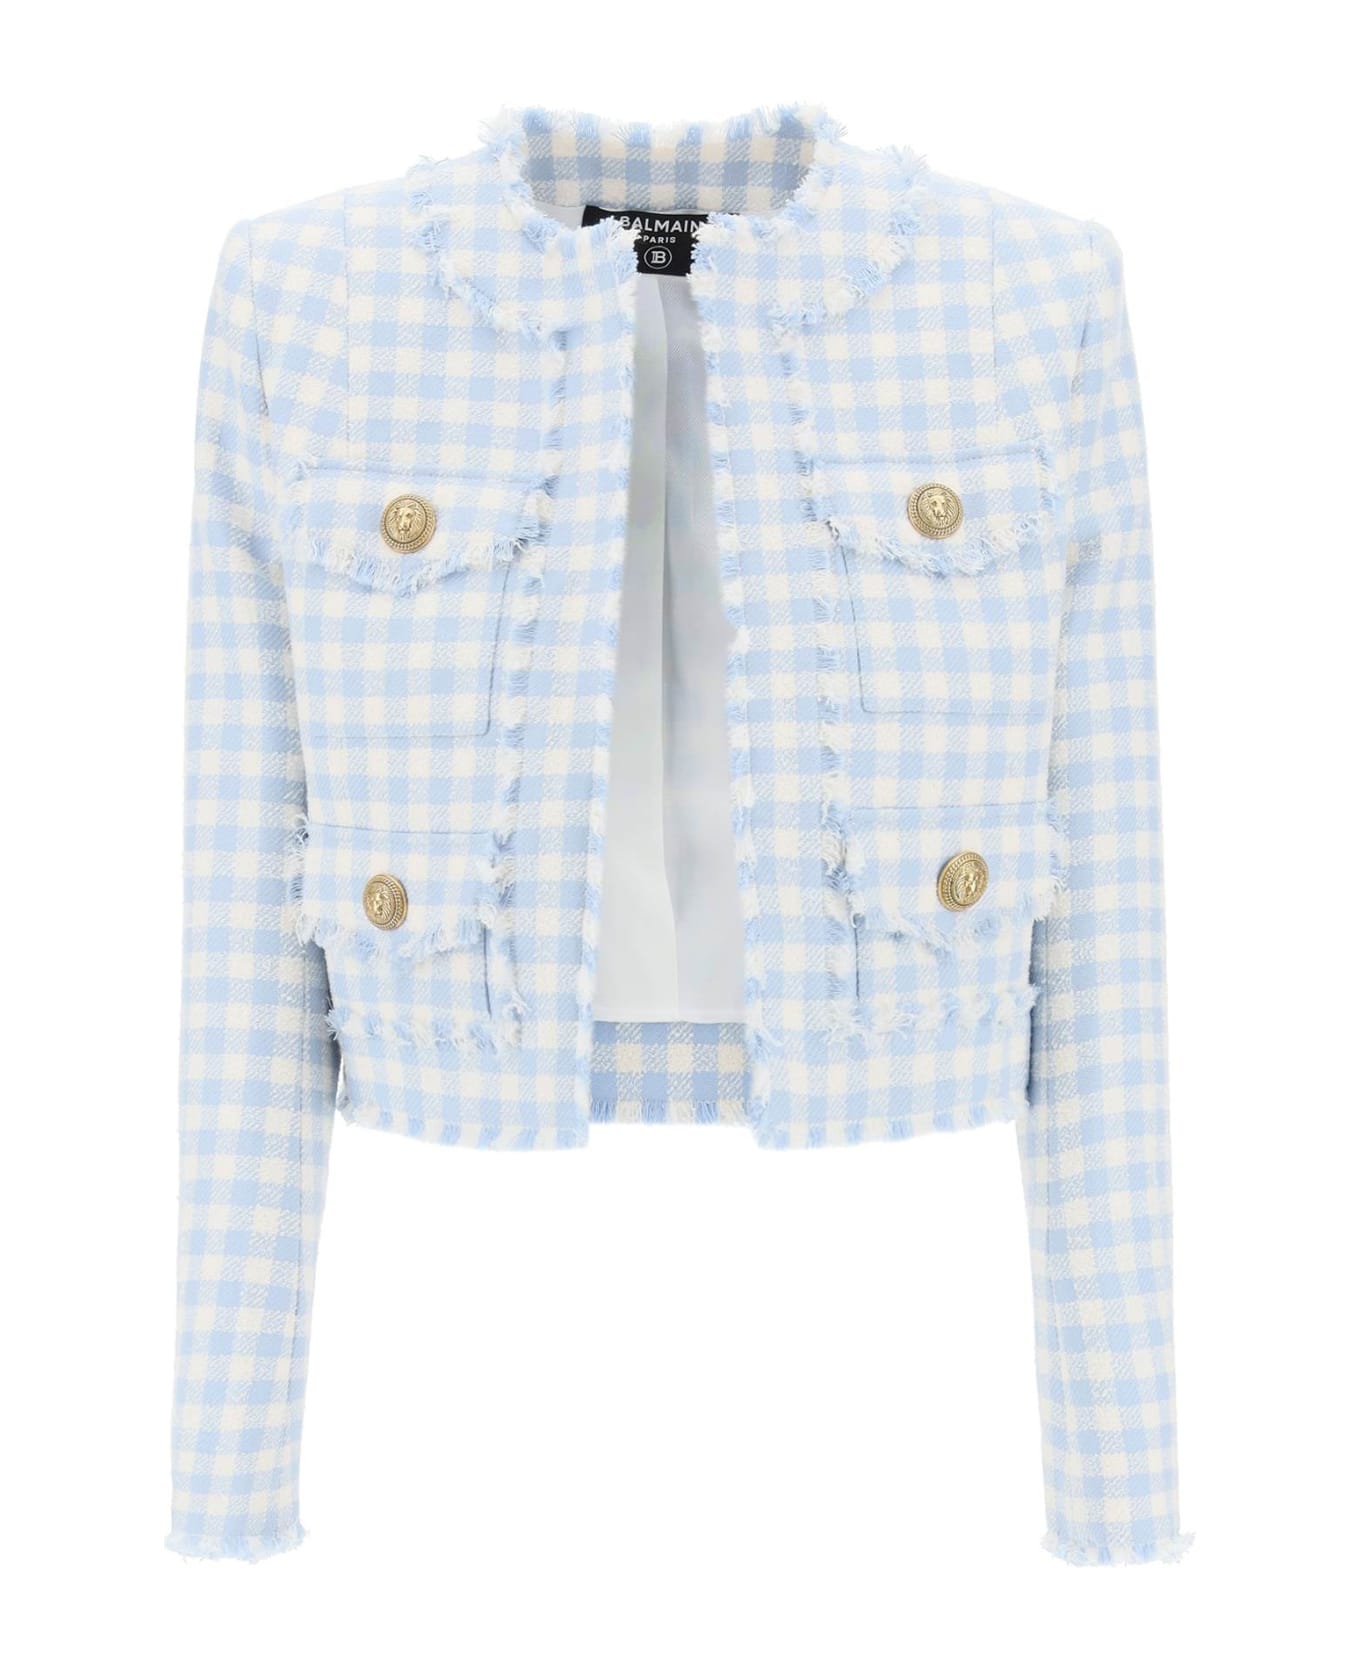 Balmain Bolero Jacket In Tweed With Gingham Pattern - Bleu pale/blanc ブレザー